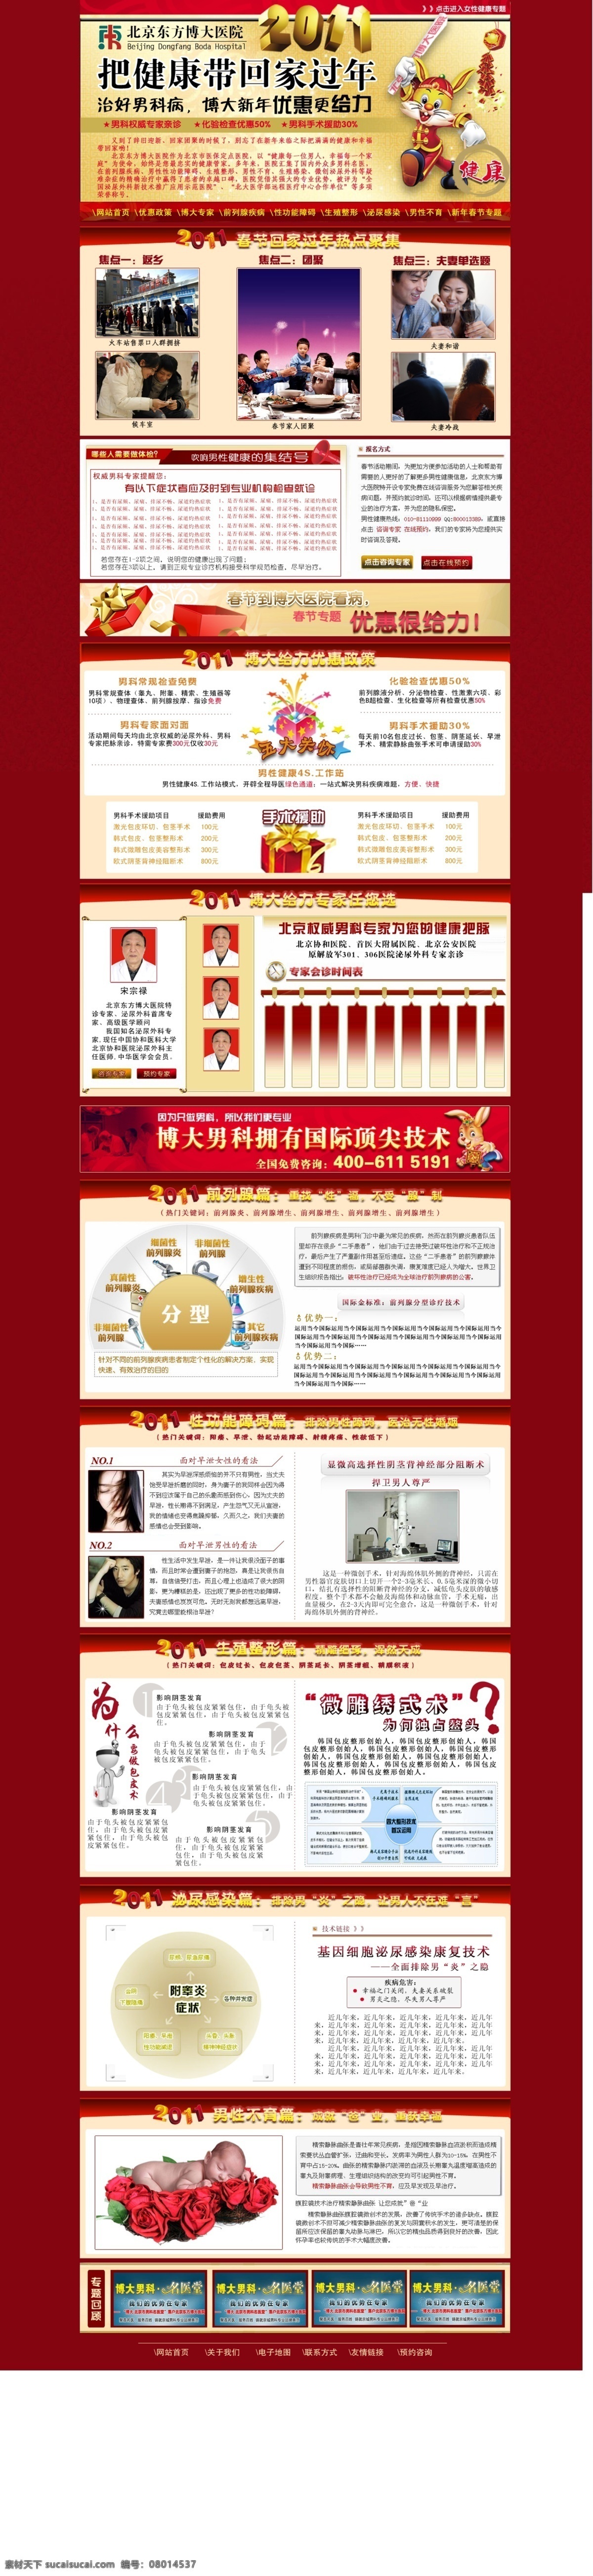 医院 新年 专题 2011 网页模板 源文件 中文模版 专题设计 医院新年专题 psd源文件